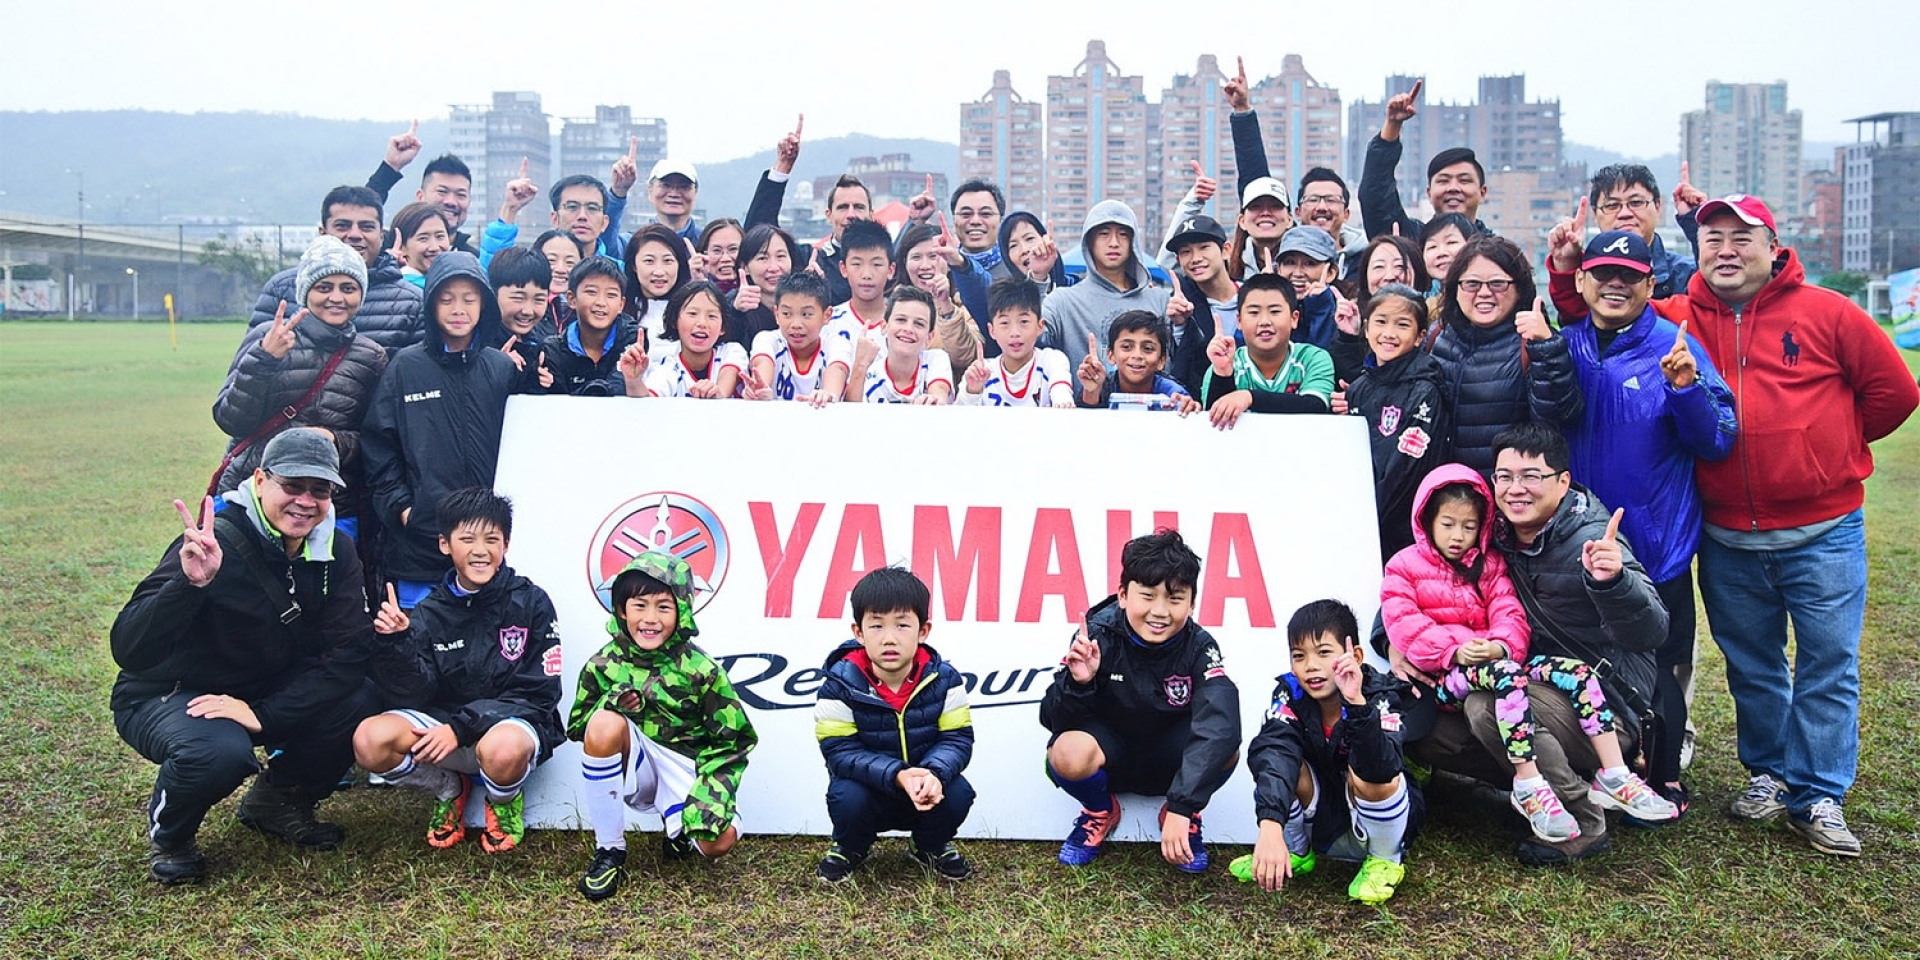 官方新聞稿。第九屆YAMAHA CUP快樂踢球趣